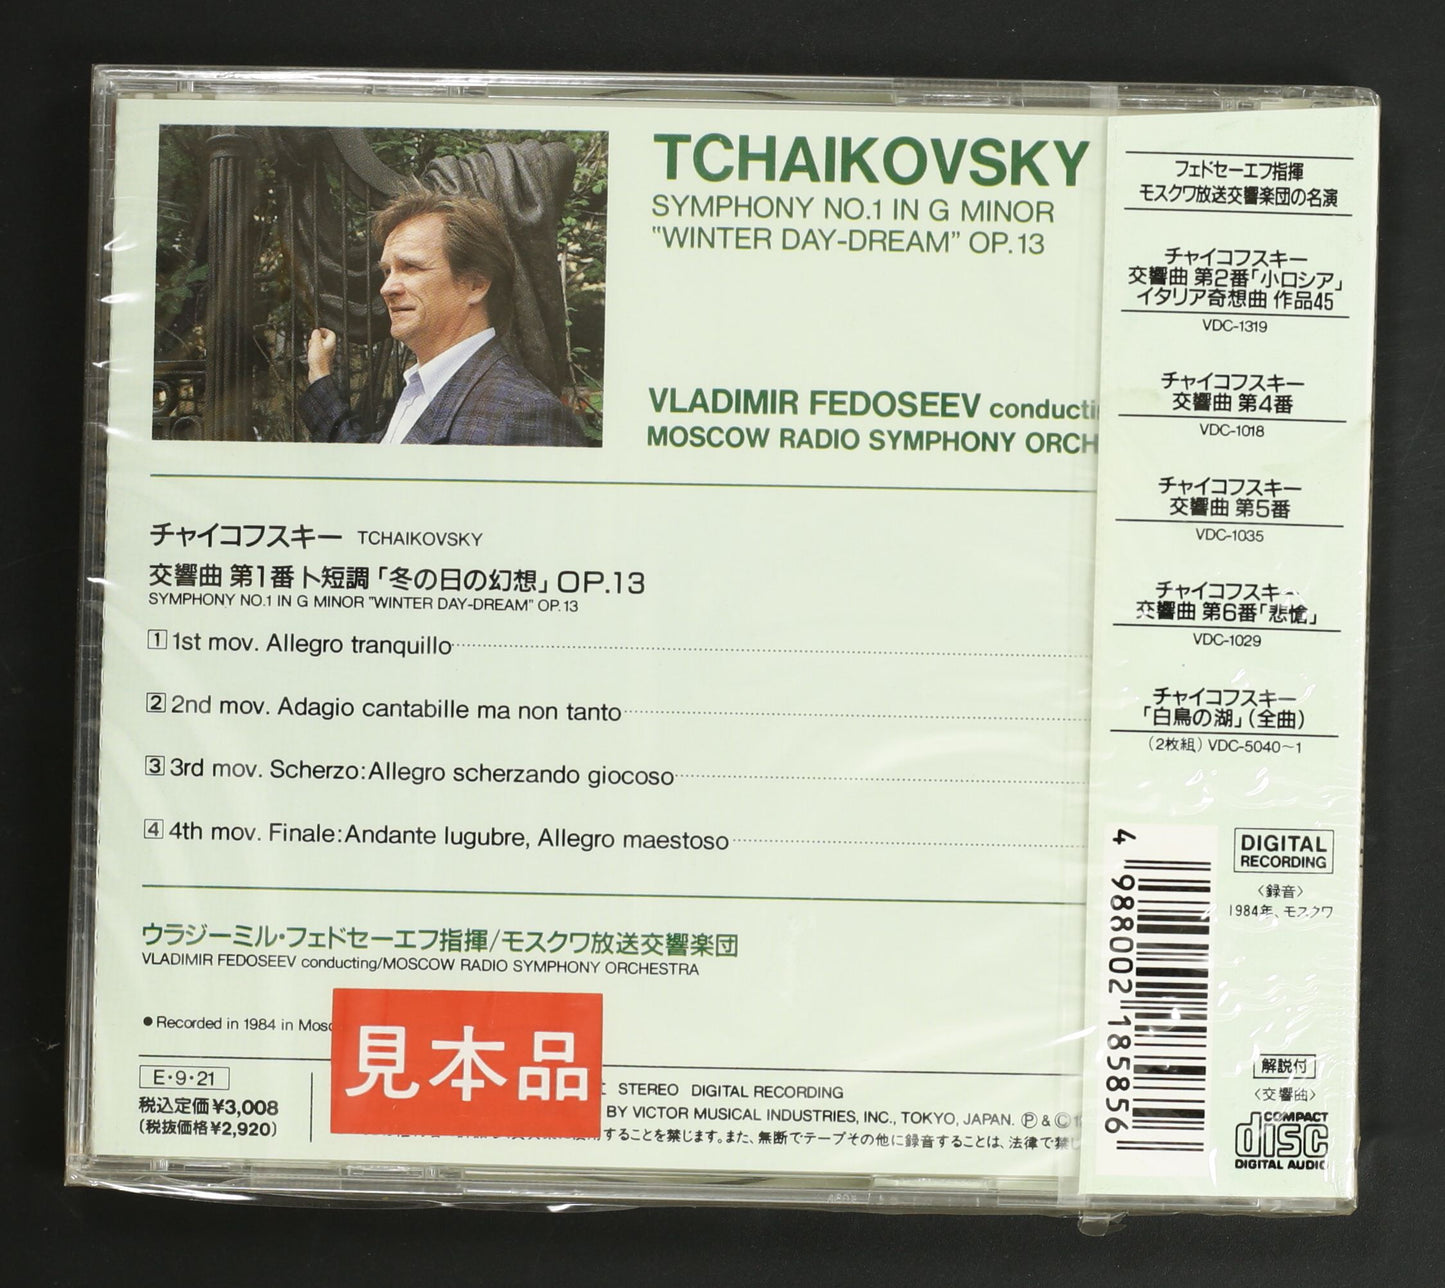 フェドセーエフ,モスクワ放送響 / チャイコフスキー:交響曲第1番